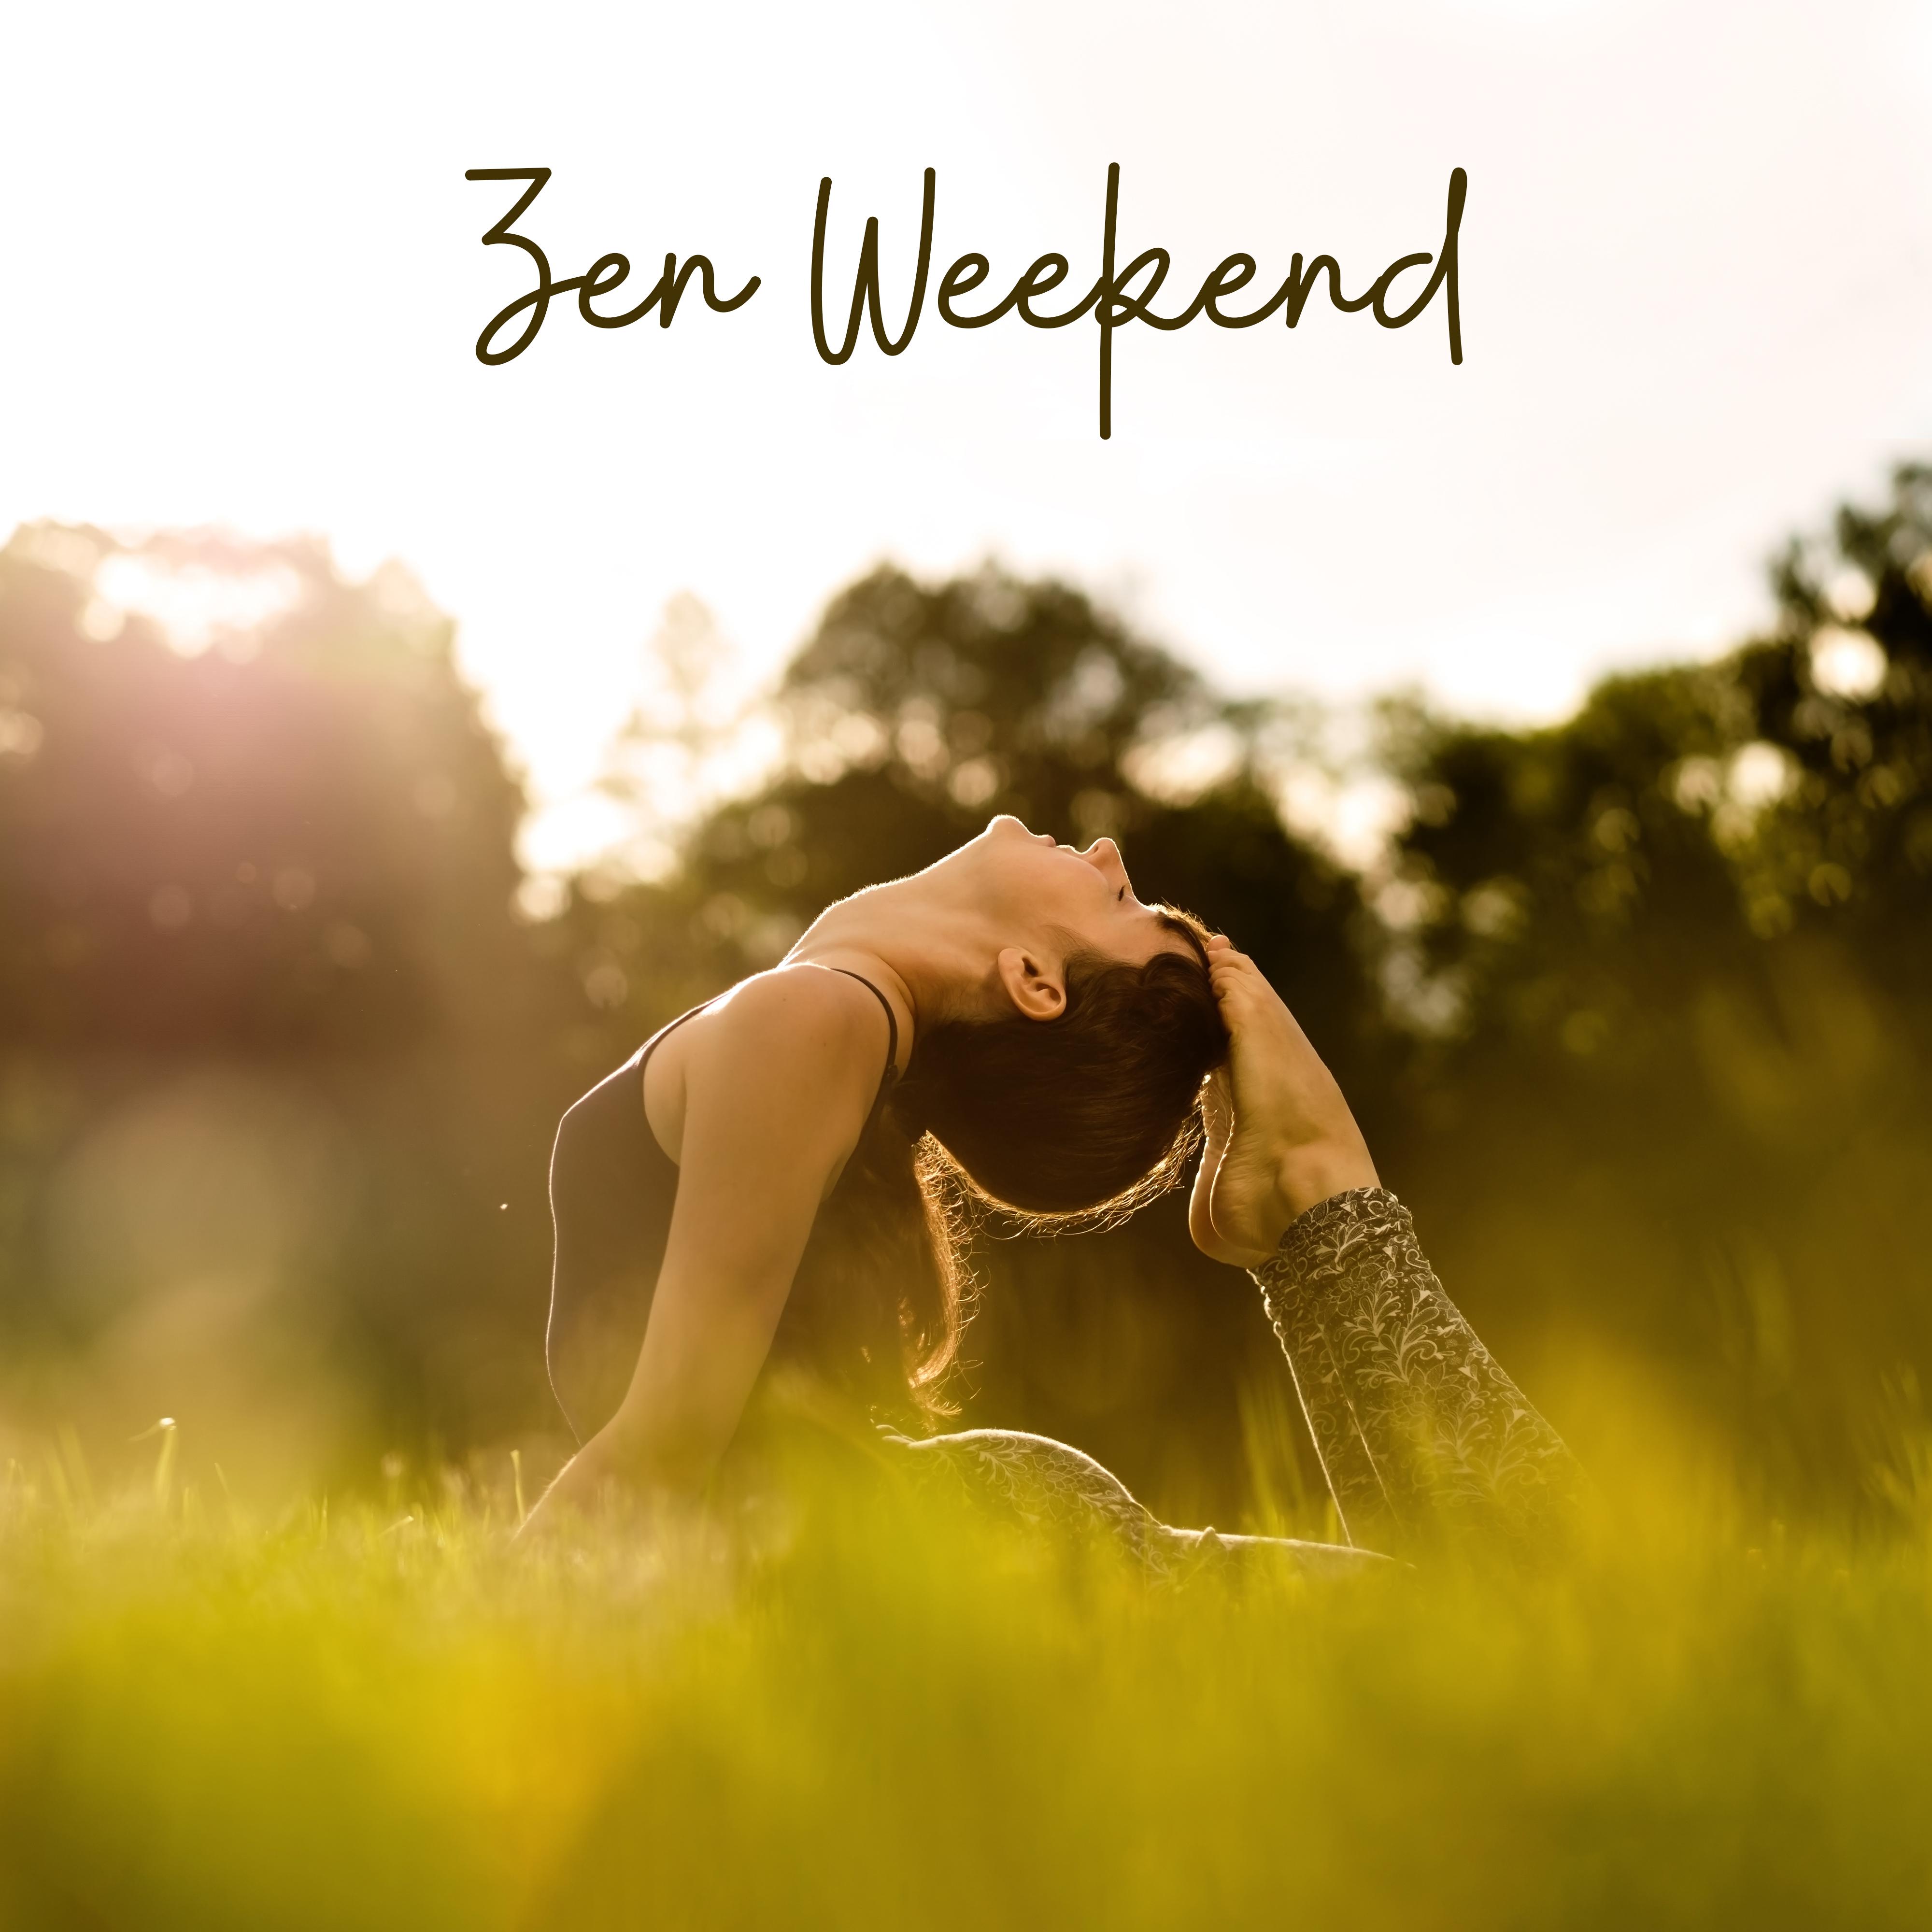 Zen Weekend